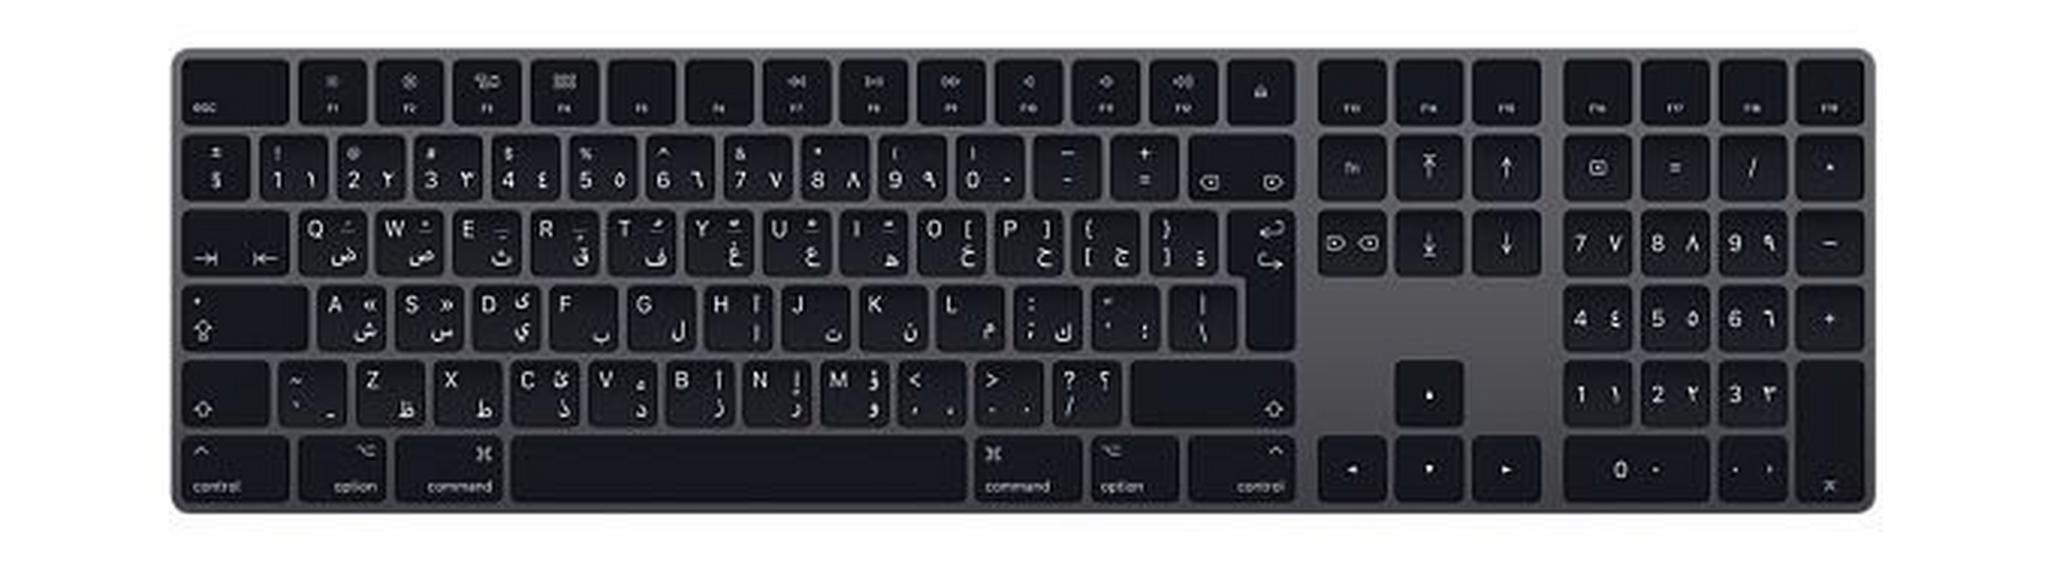 لوحة مفاتيح ماجيك العربية مع لوحة مفاتيح الأرقام من أبل - رمادي